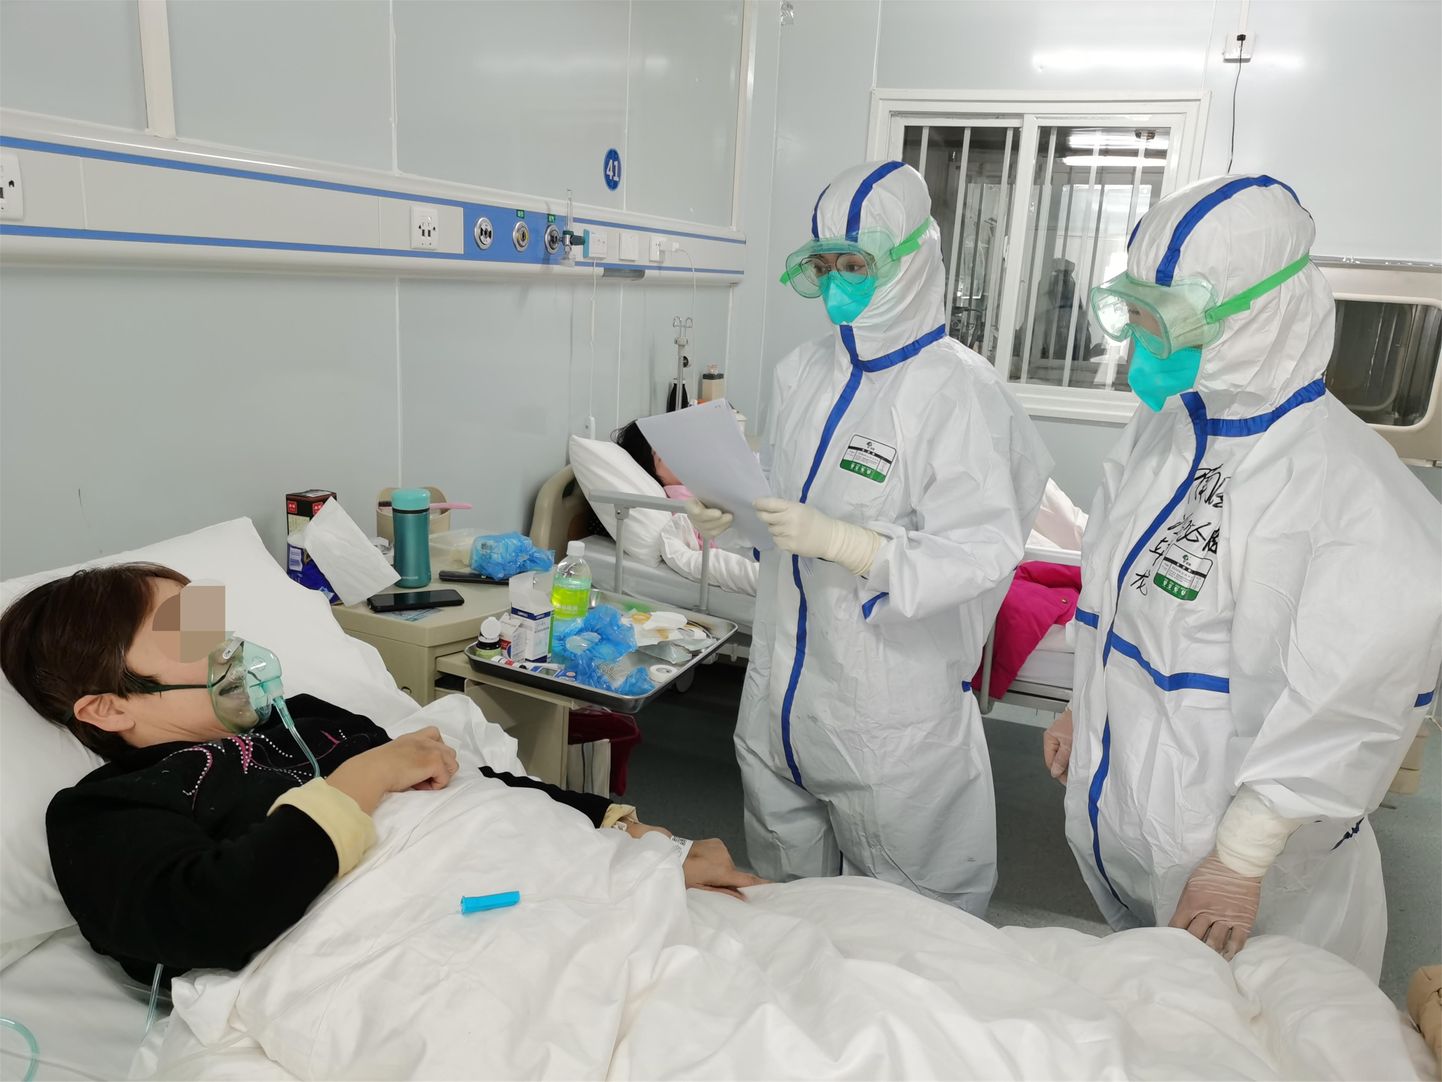 Wuhani haigla patsientide hulgas läbi viidud uuringust on selgunud haiguse tüüpiline kulg ja juba ka mõned ebatüüpilised sümptomid.